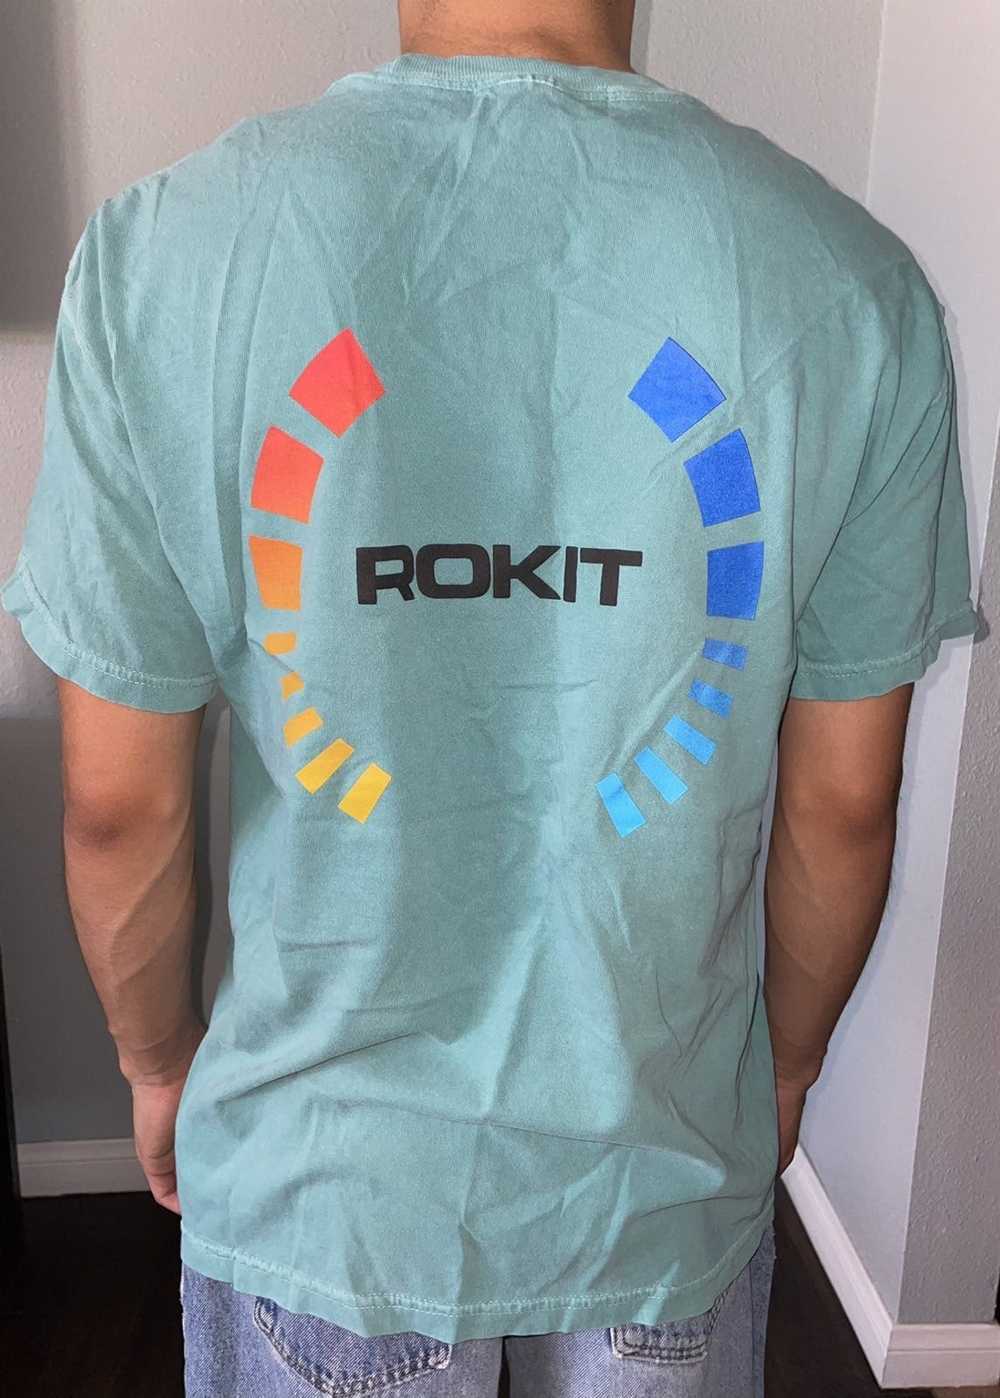 Rokit Rokit Teal Shirt - image 2